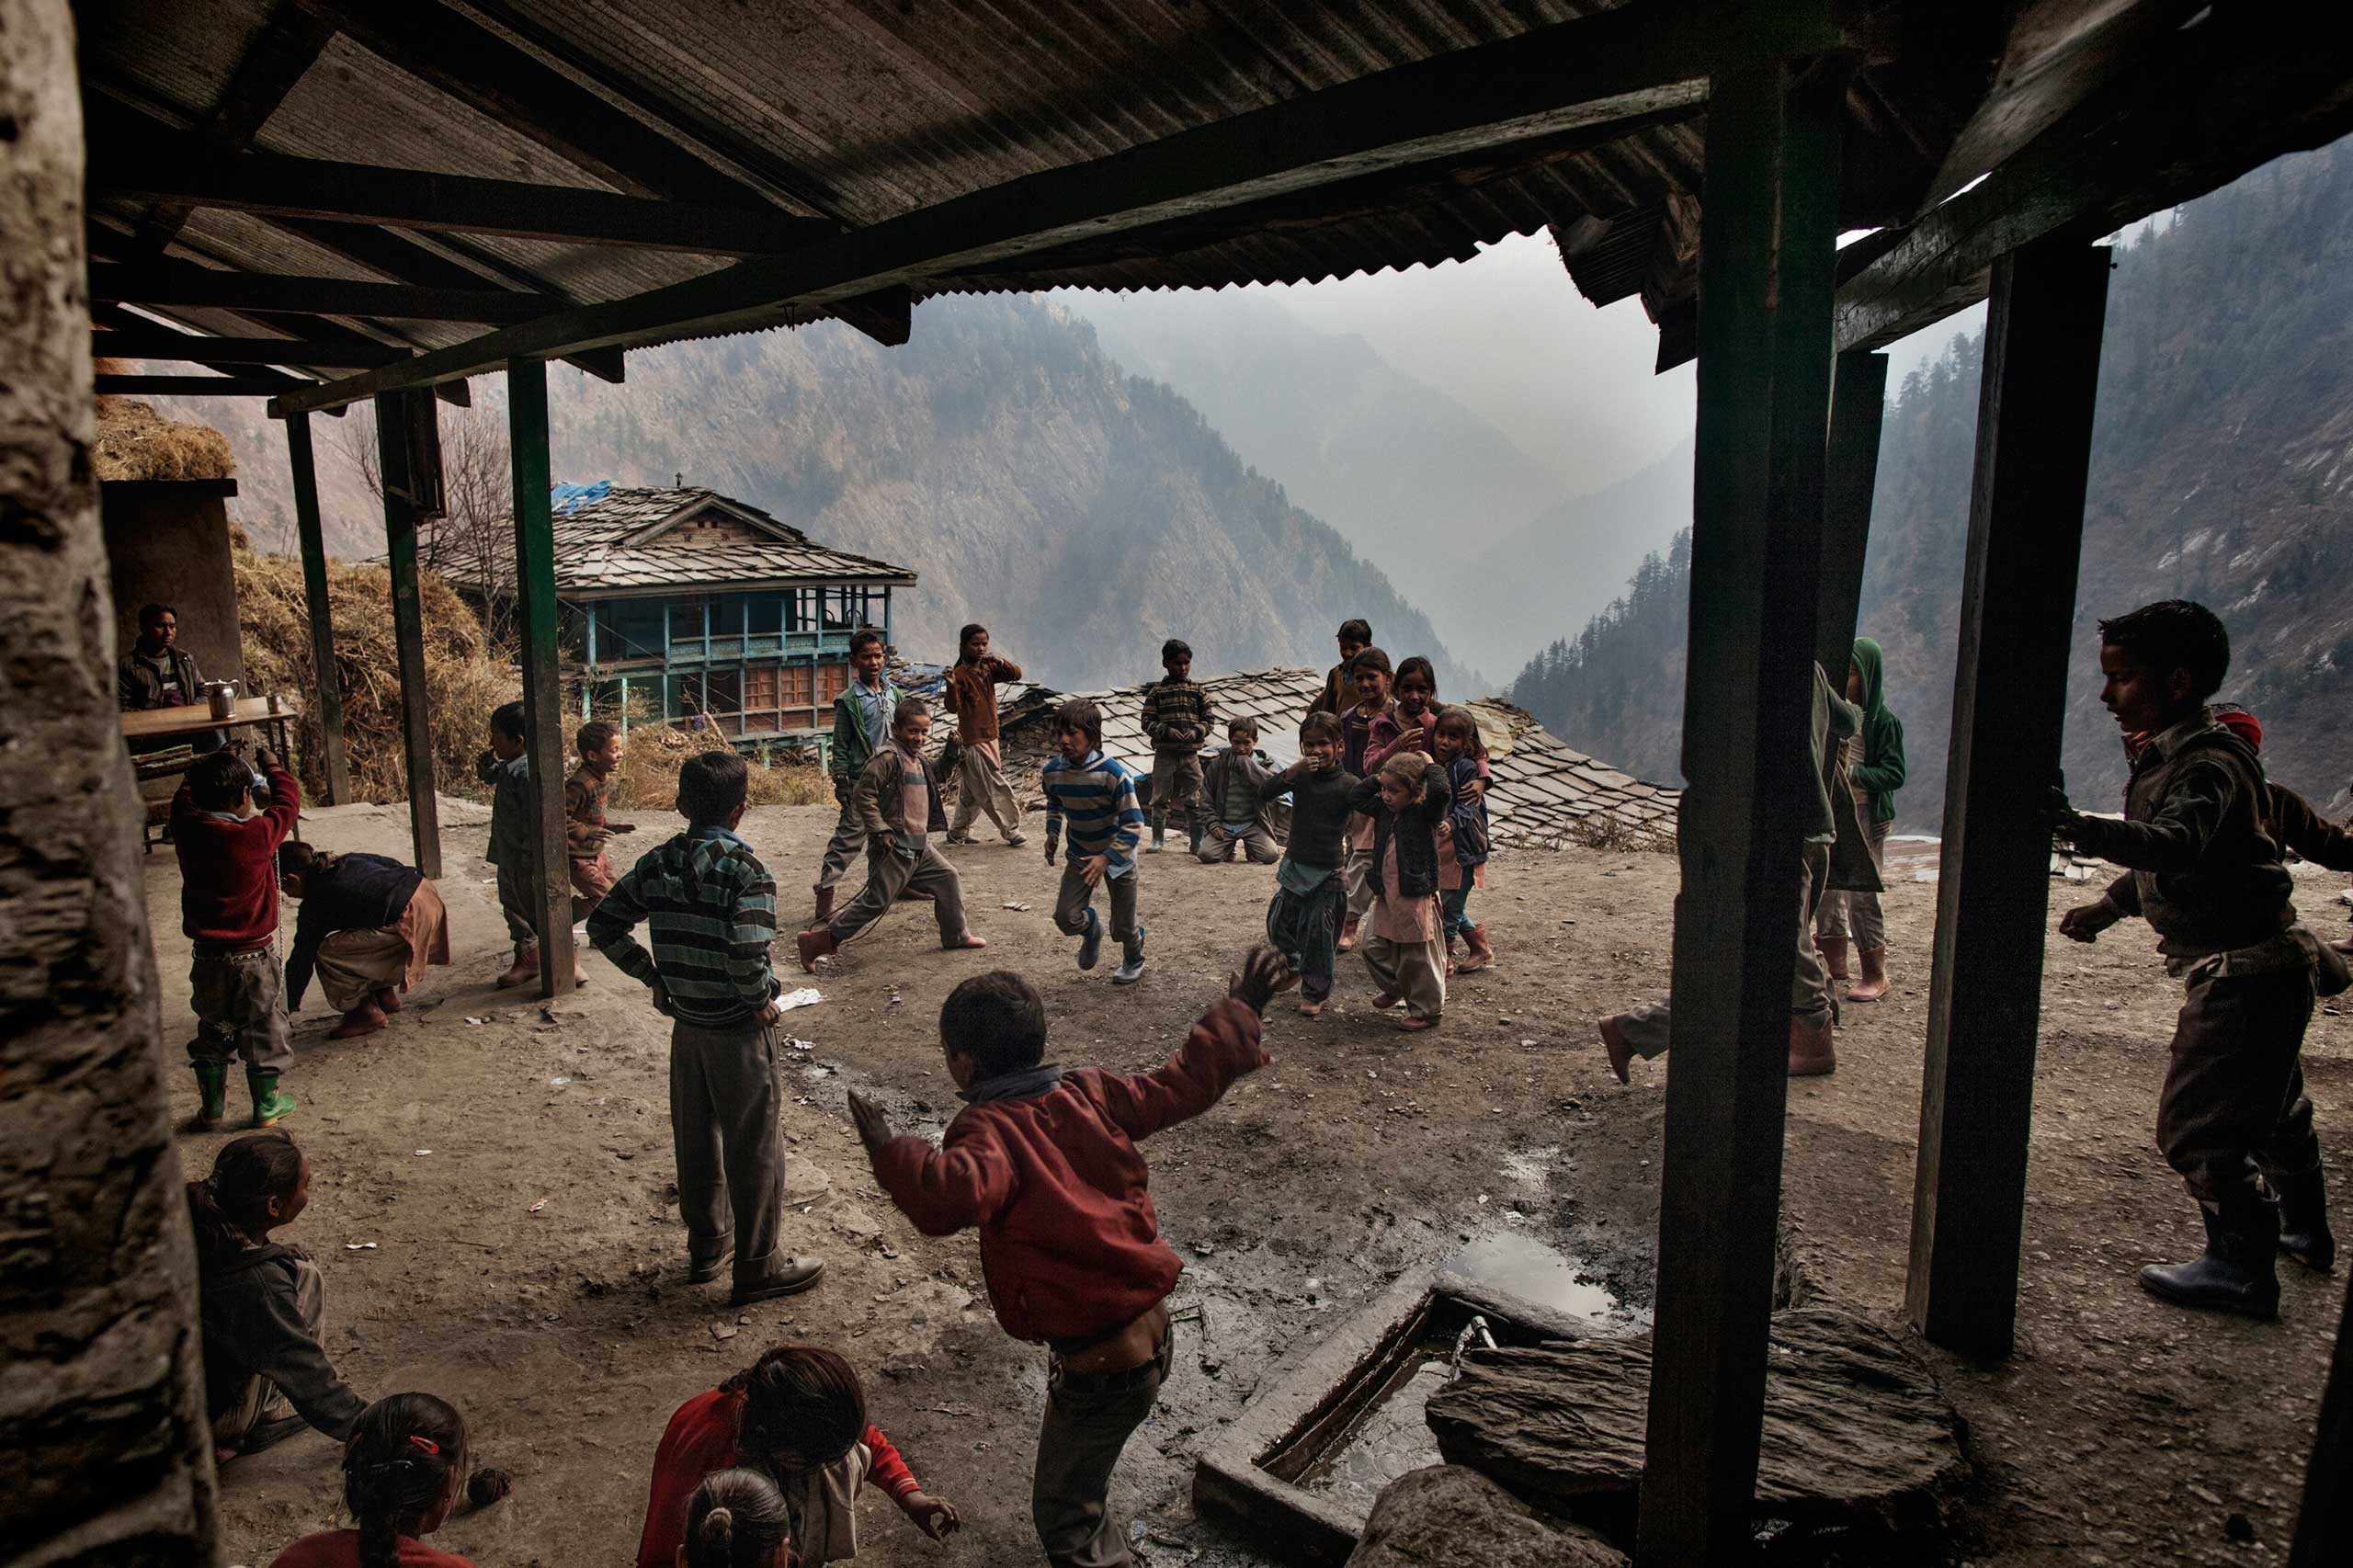 Children play in the village schoolyard in Dec. 2014.